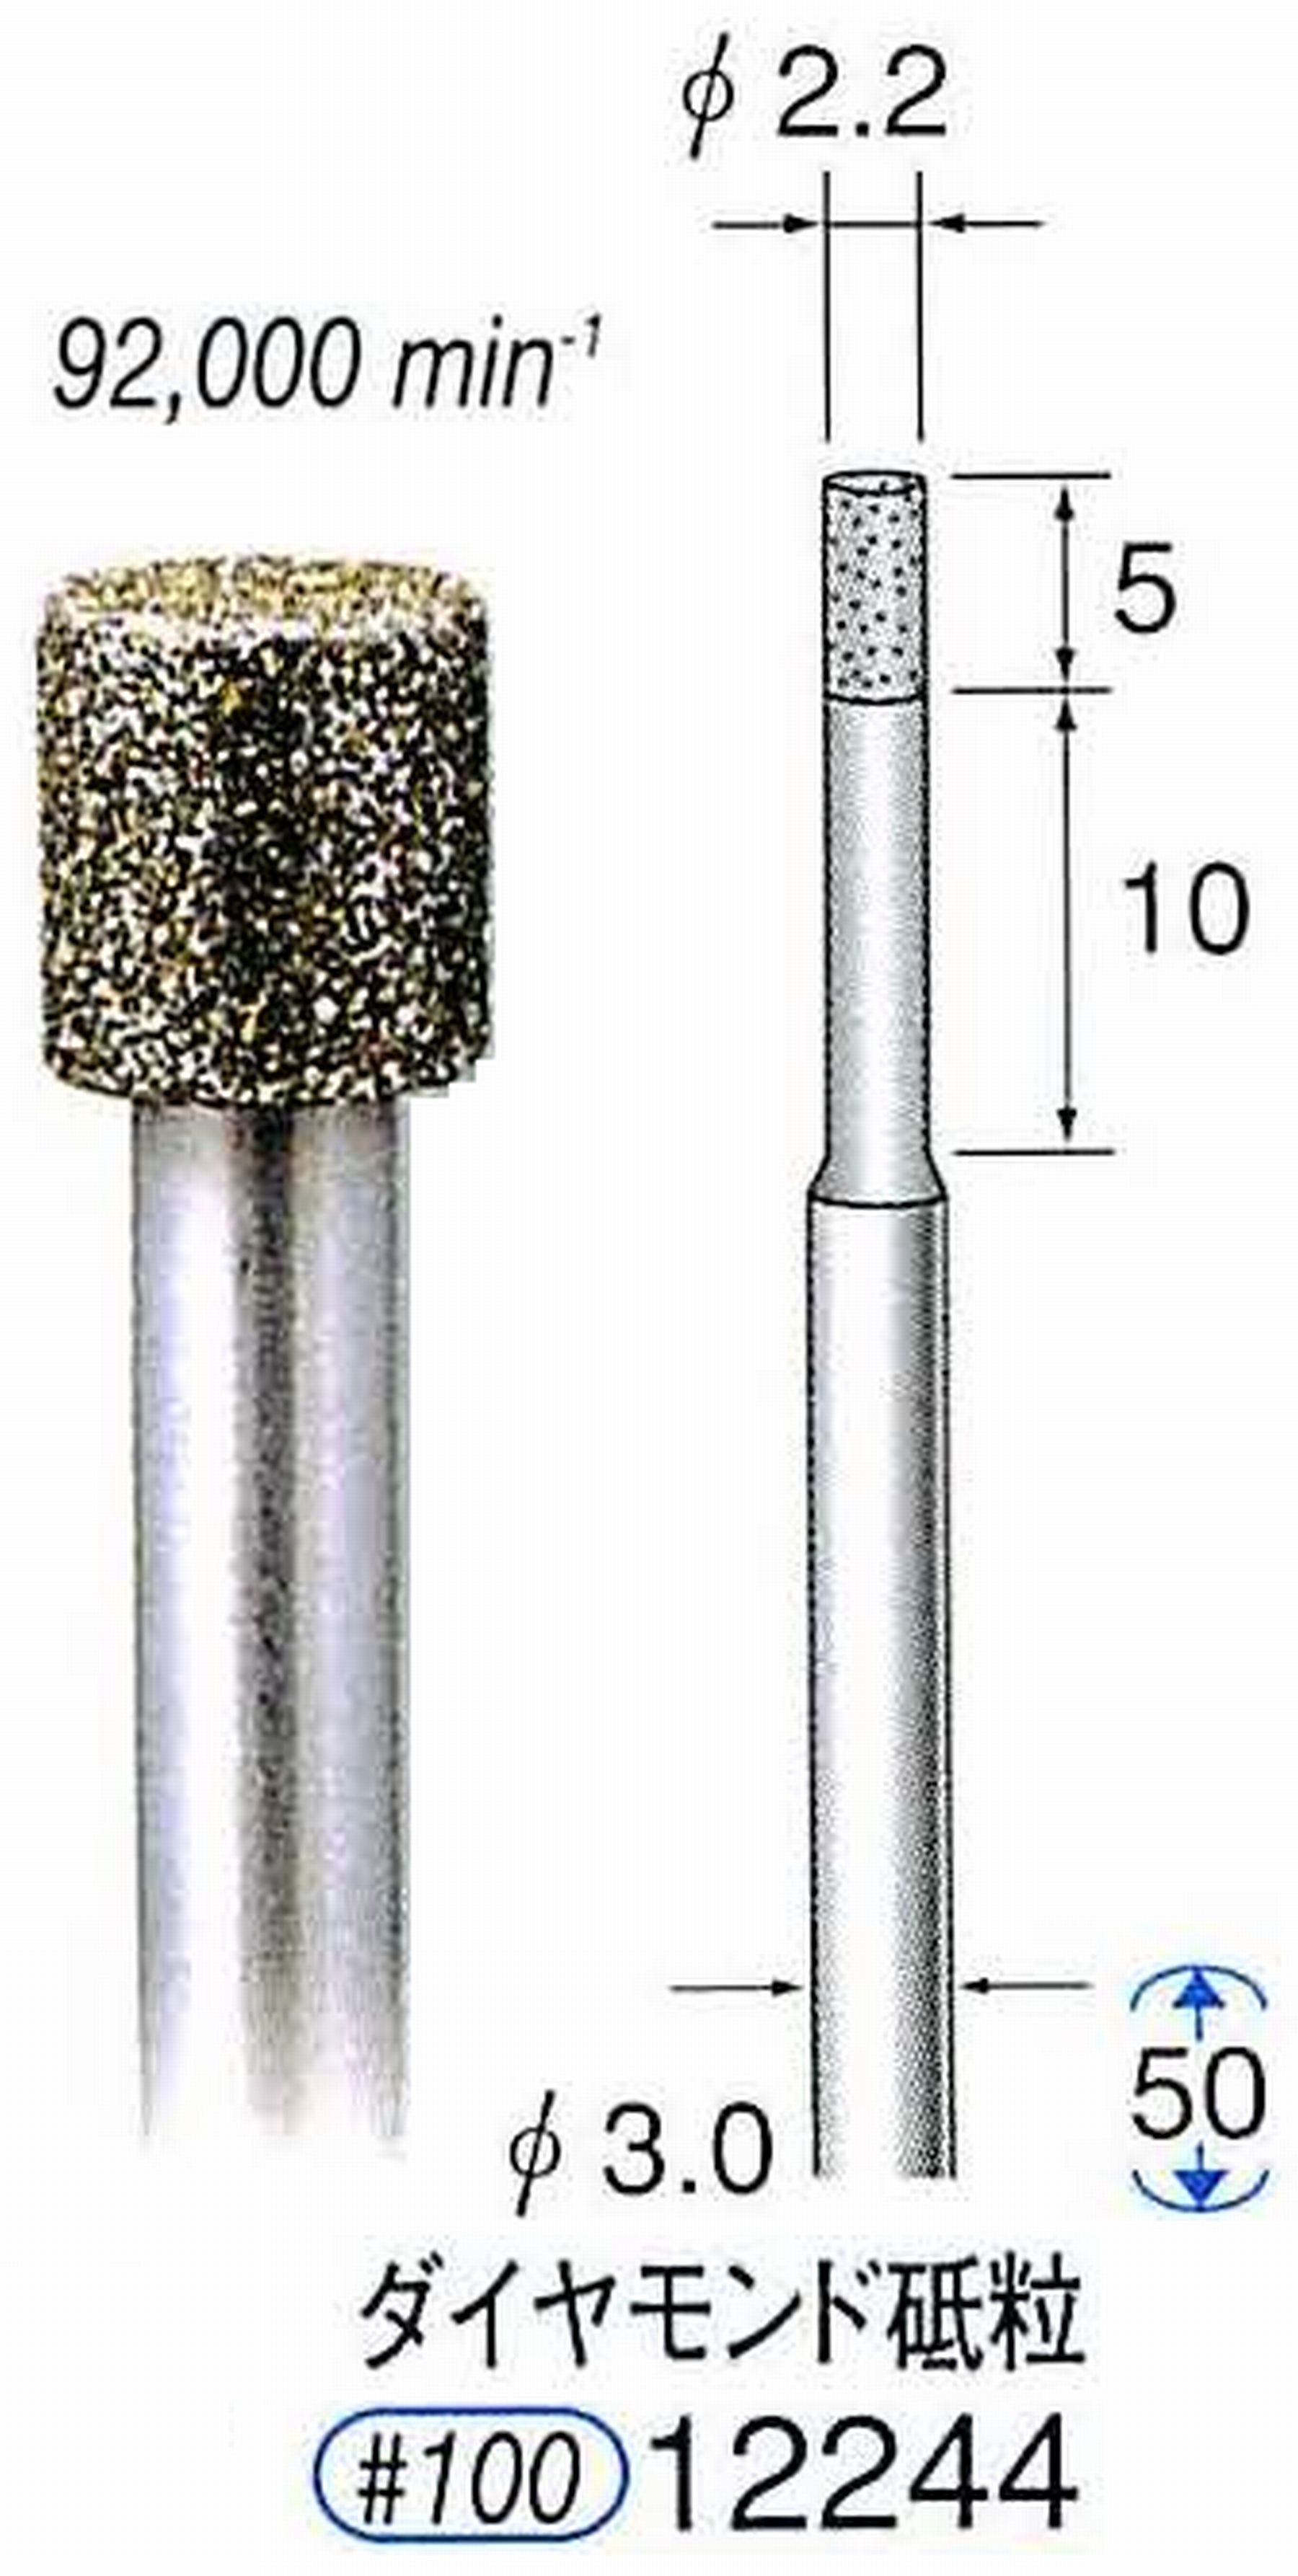 ナカニシ/NAKANISHI 超硬軸 電着ダイヤモンド ダイヤモンド砥粒 軸径(シャンク)φ3.0mm 12244